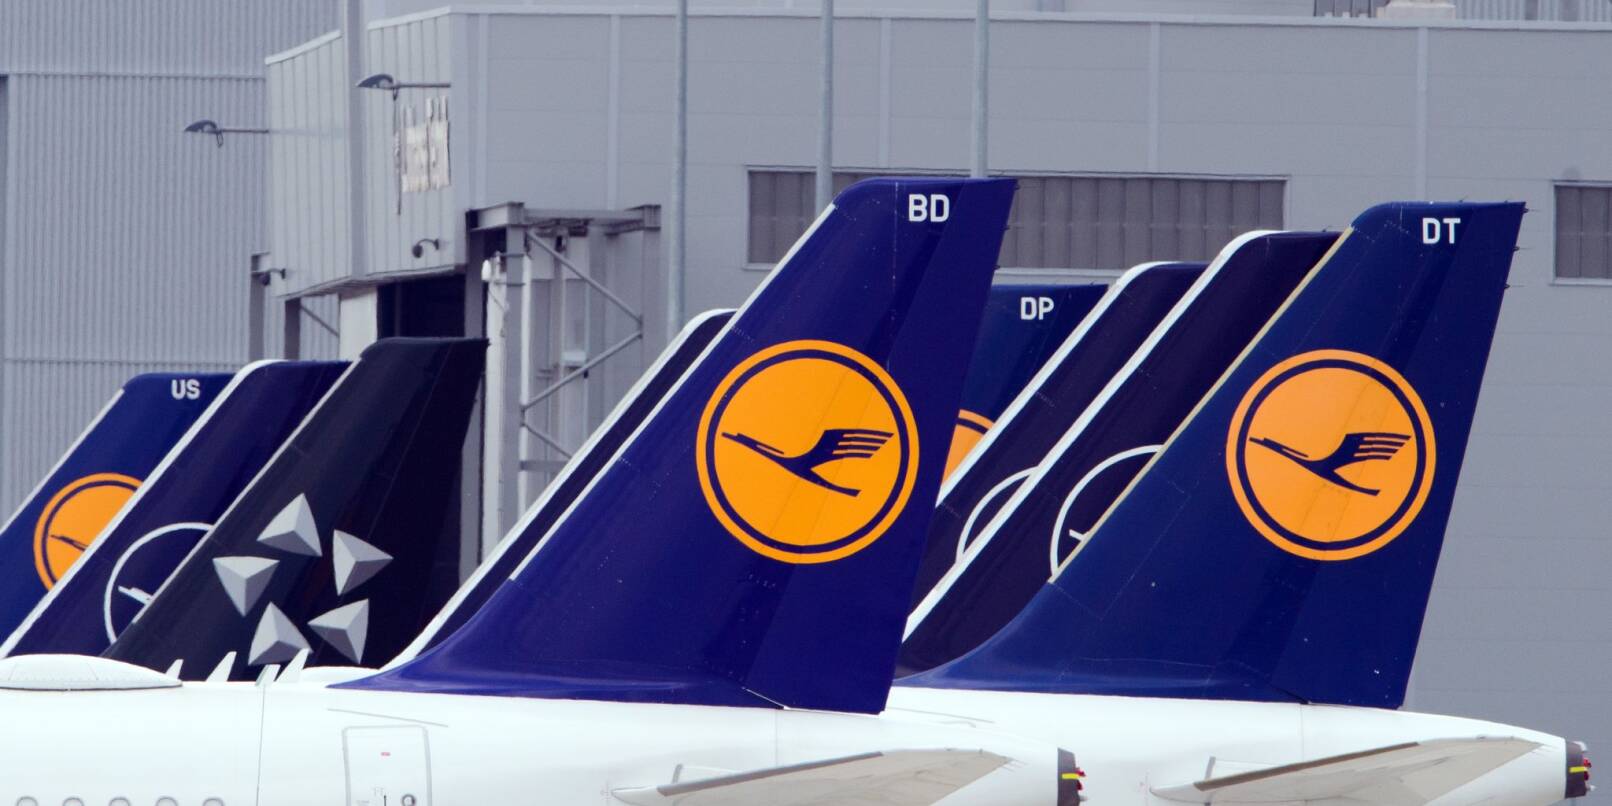 Flugzeuge der Fluggesellschaft Lufthansa stehen am Rand eines Rollfeldes nebeneinander.